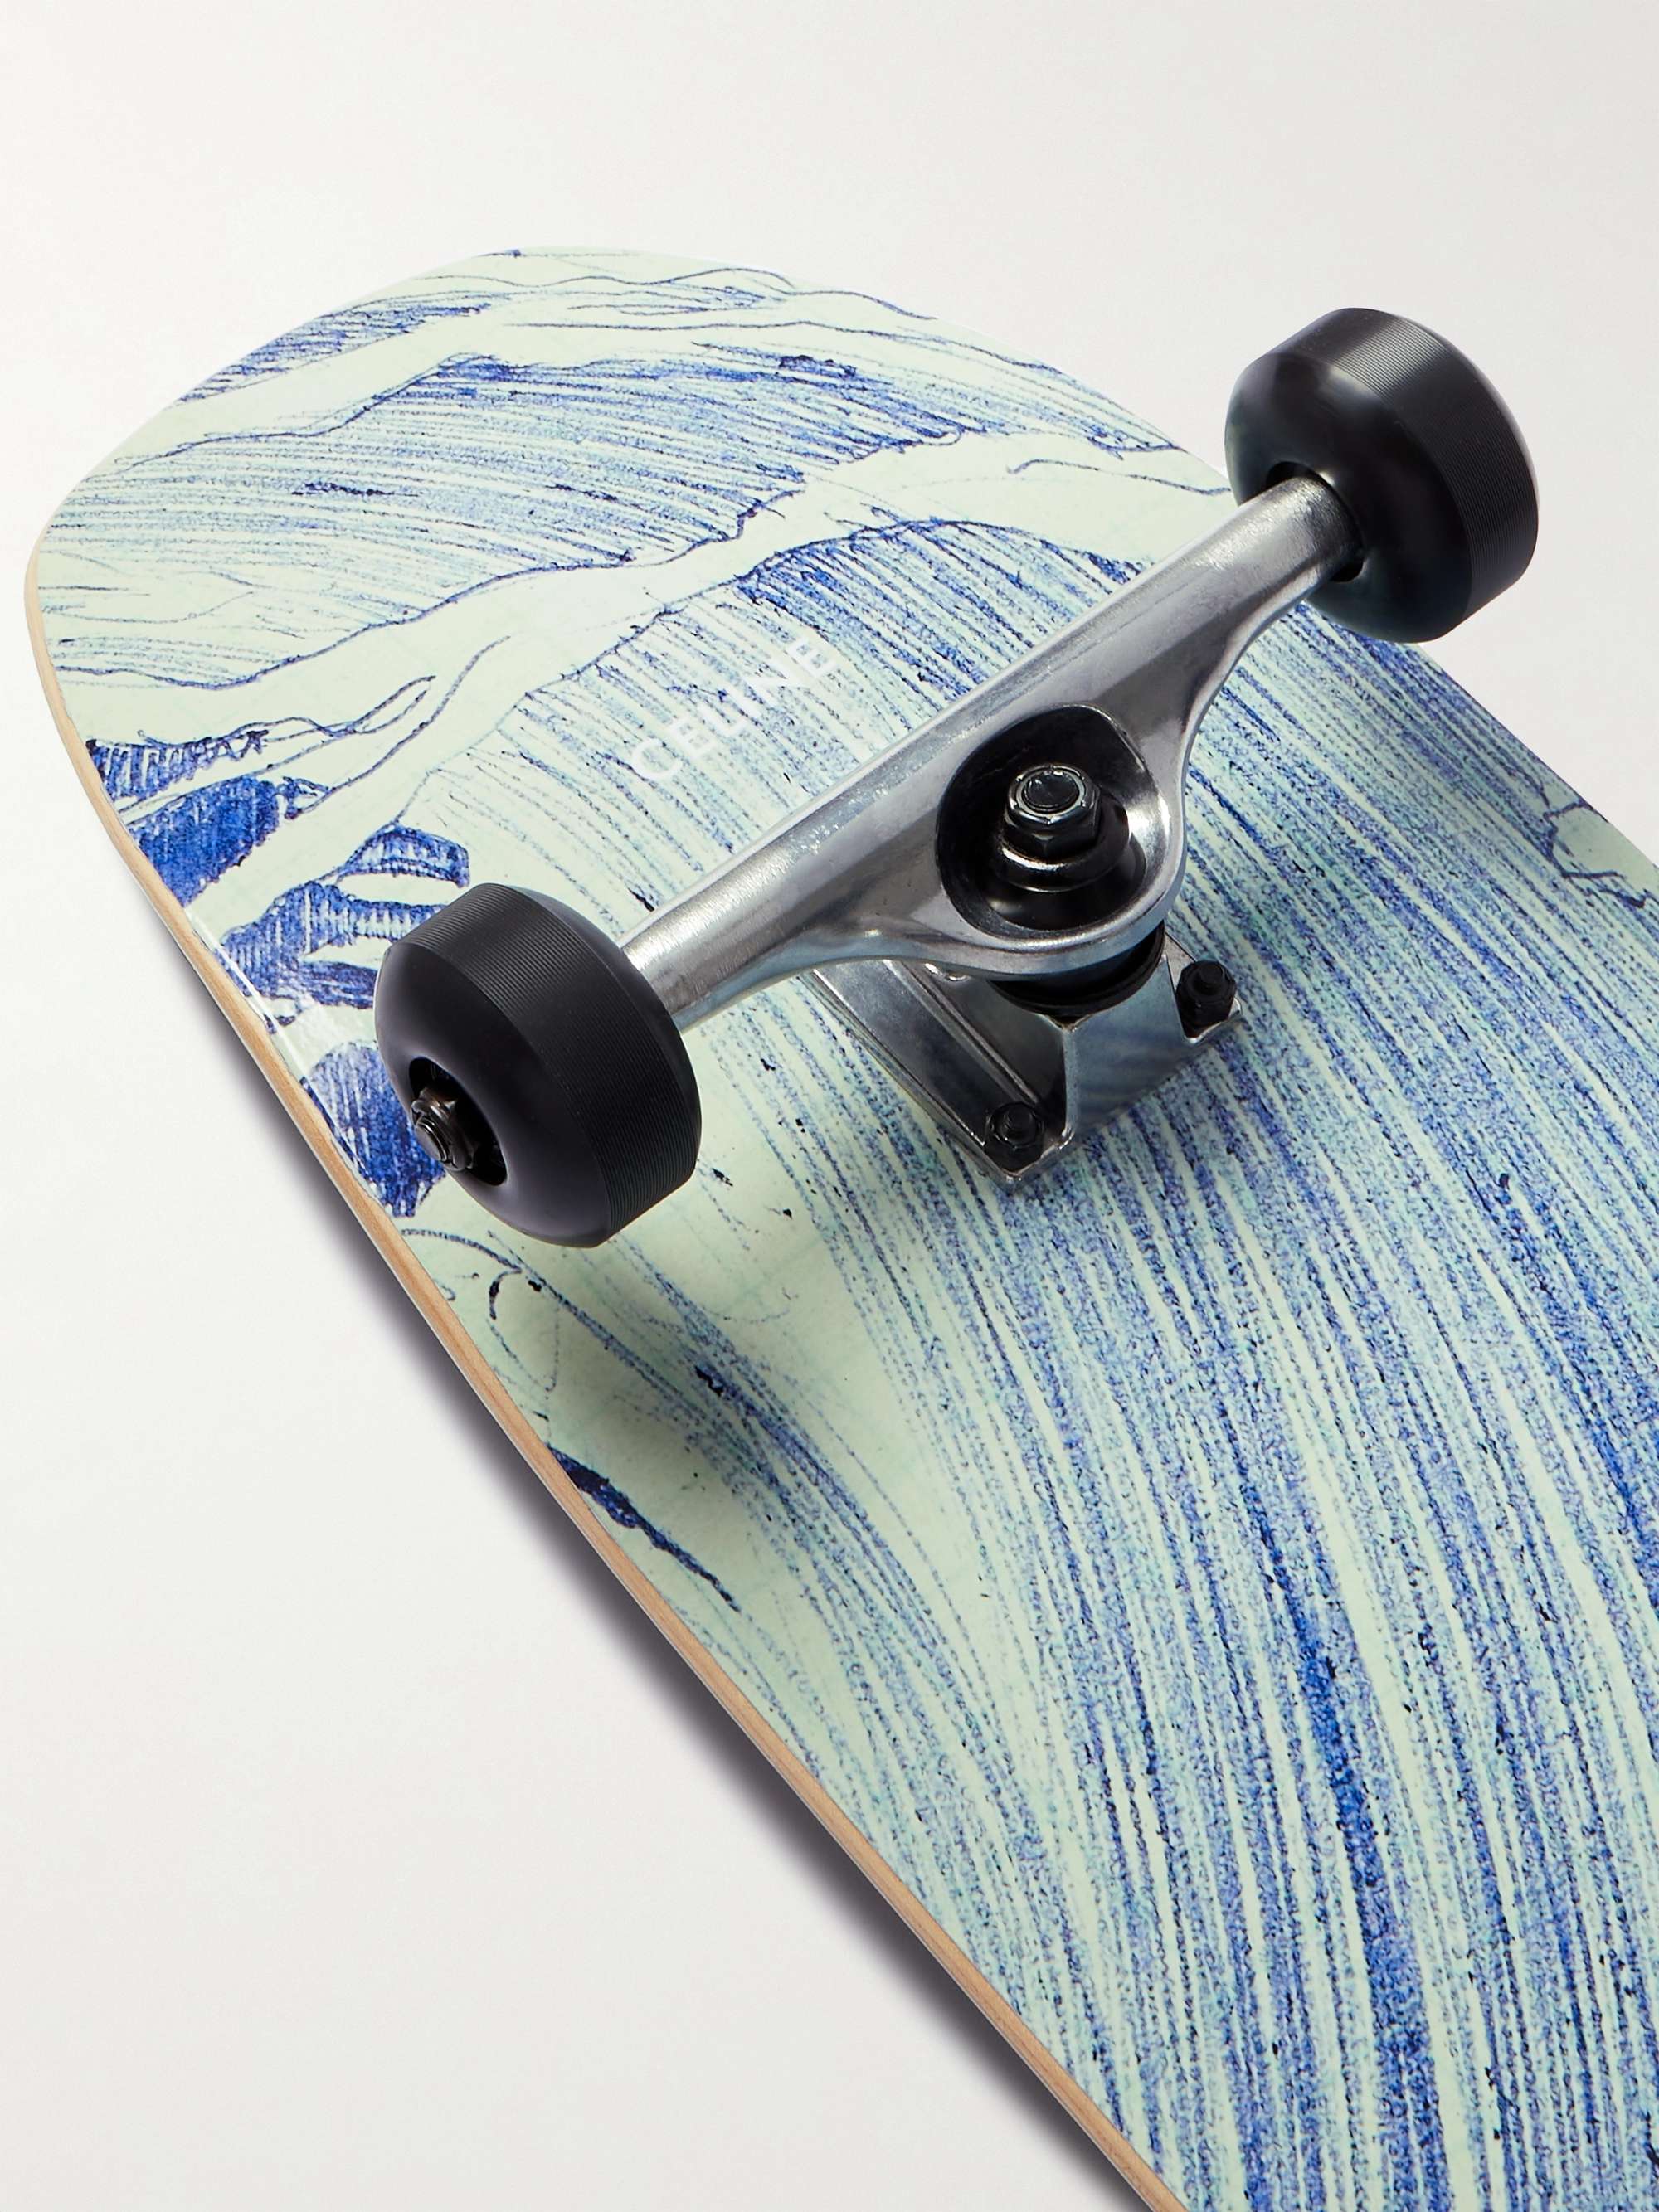 CELINE HOMME Printed Wooden Skateboard